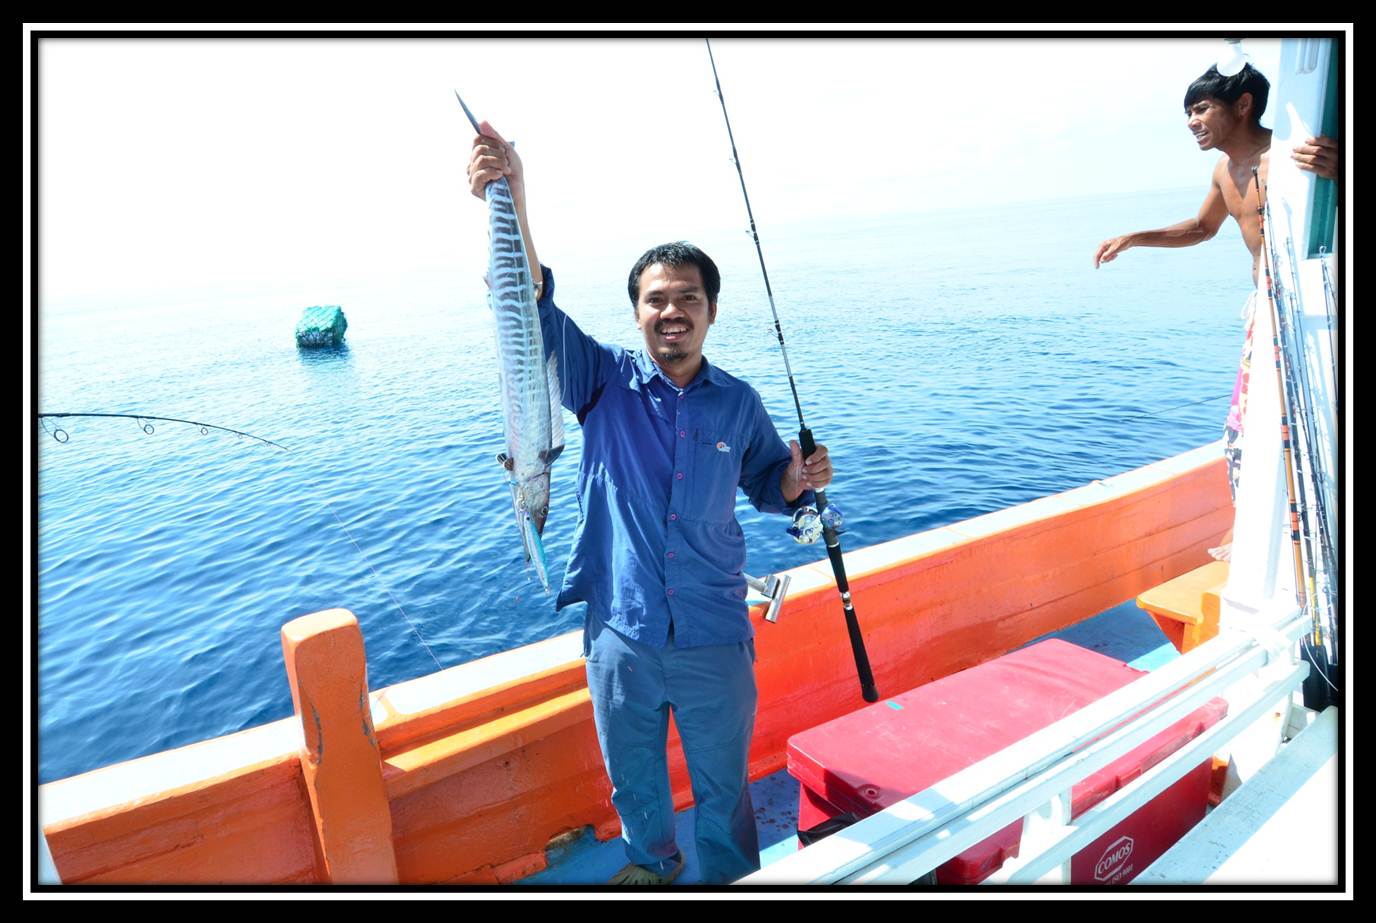 ถึงหมายแรกประมาณบ่าย 2 โมงกว่า ๆ ผมจิ๊ก...โดนไม้แรกเลยปลาตัวแรกในการจิ๊กของทริปนี้ครับ ปลาวาฮูครับ :